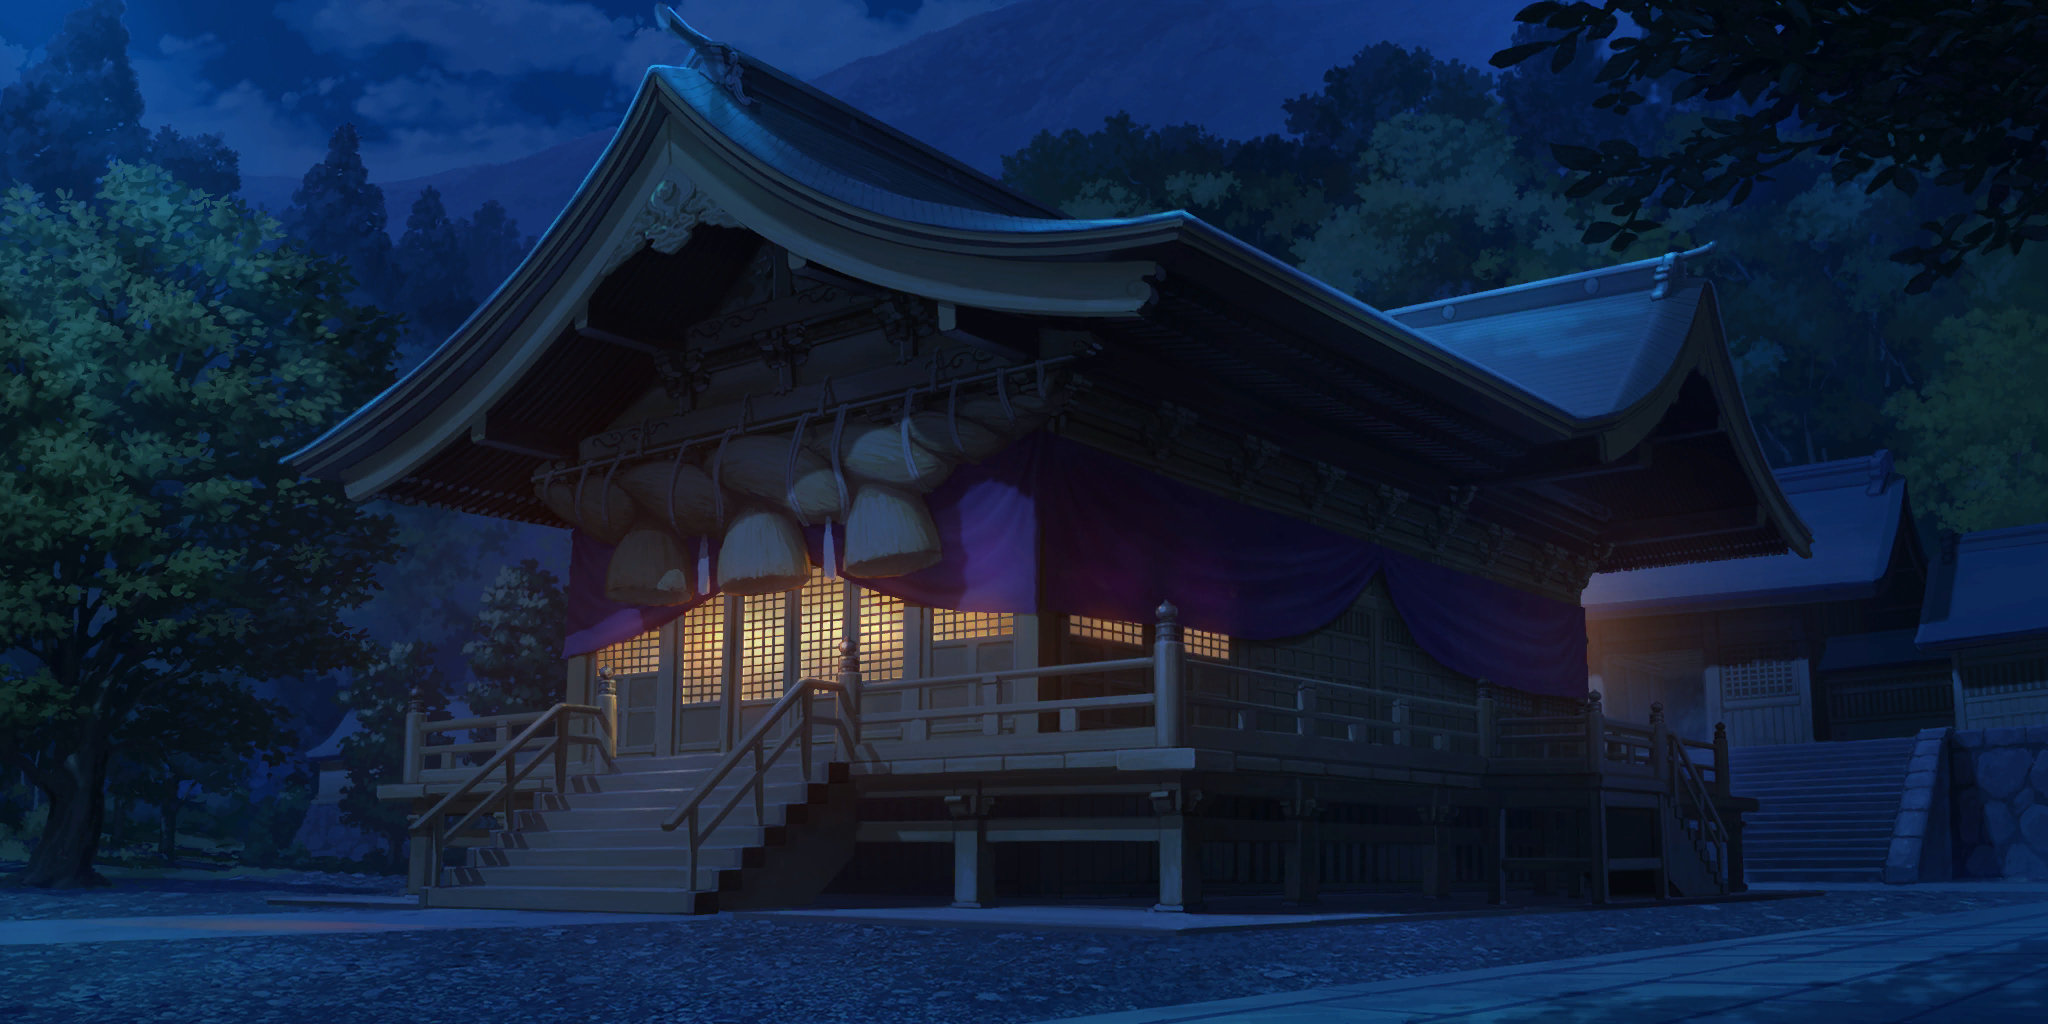 Touhou LostWord - Moriya Shrine (Night)